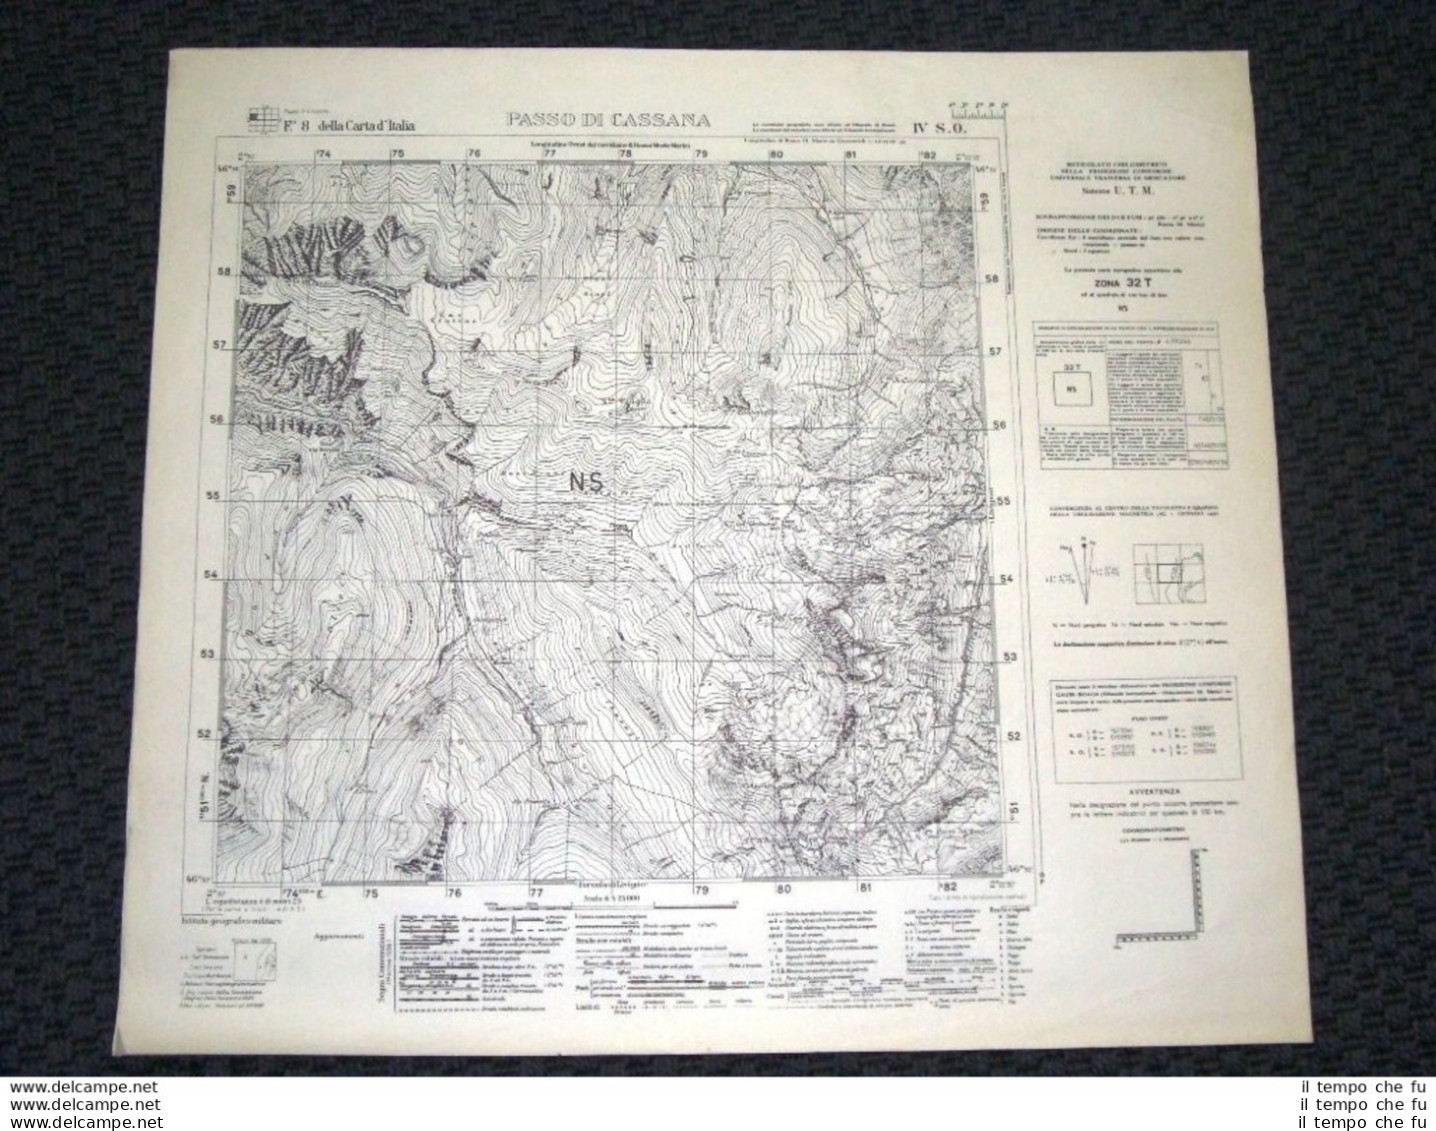 Grande Carta Topografica Passo Di Cassana E Dintorni Dettagliatissima I.G.M. - Geographical Maps